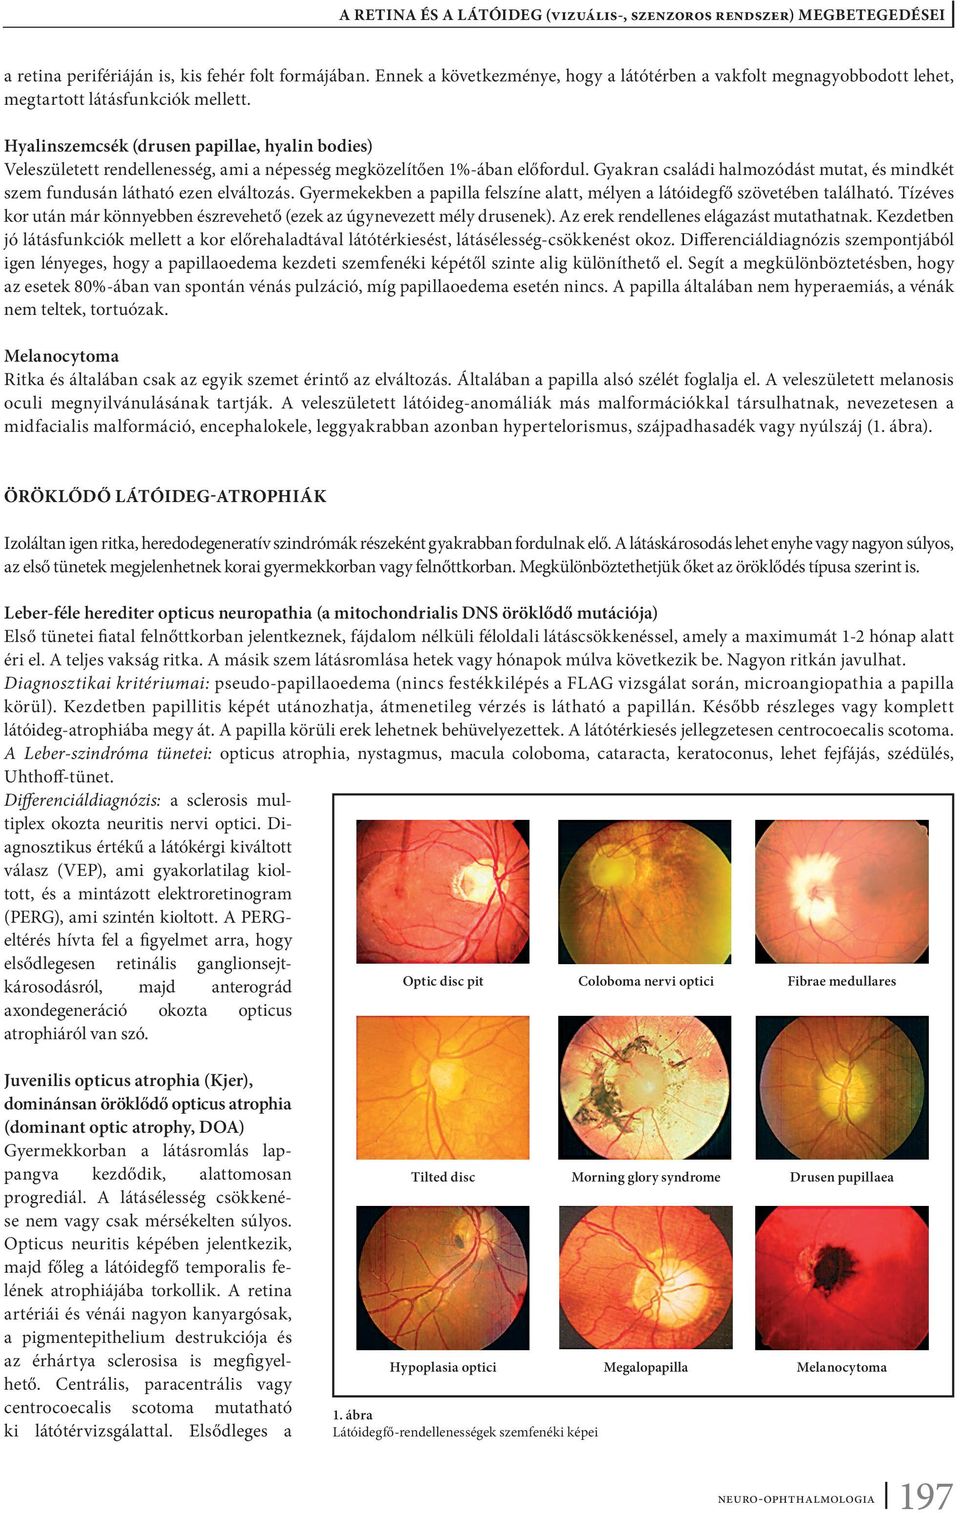 a vizuális rendszer fő rendellenességei hogy a citramon hogyan befolyásolja a látást